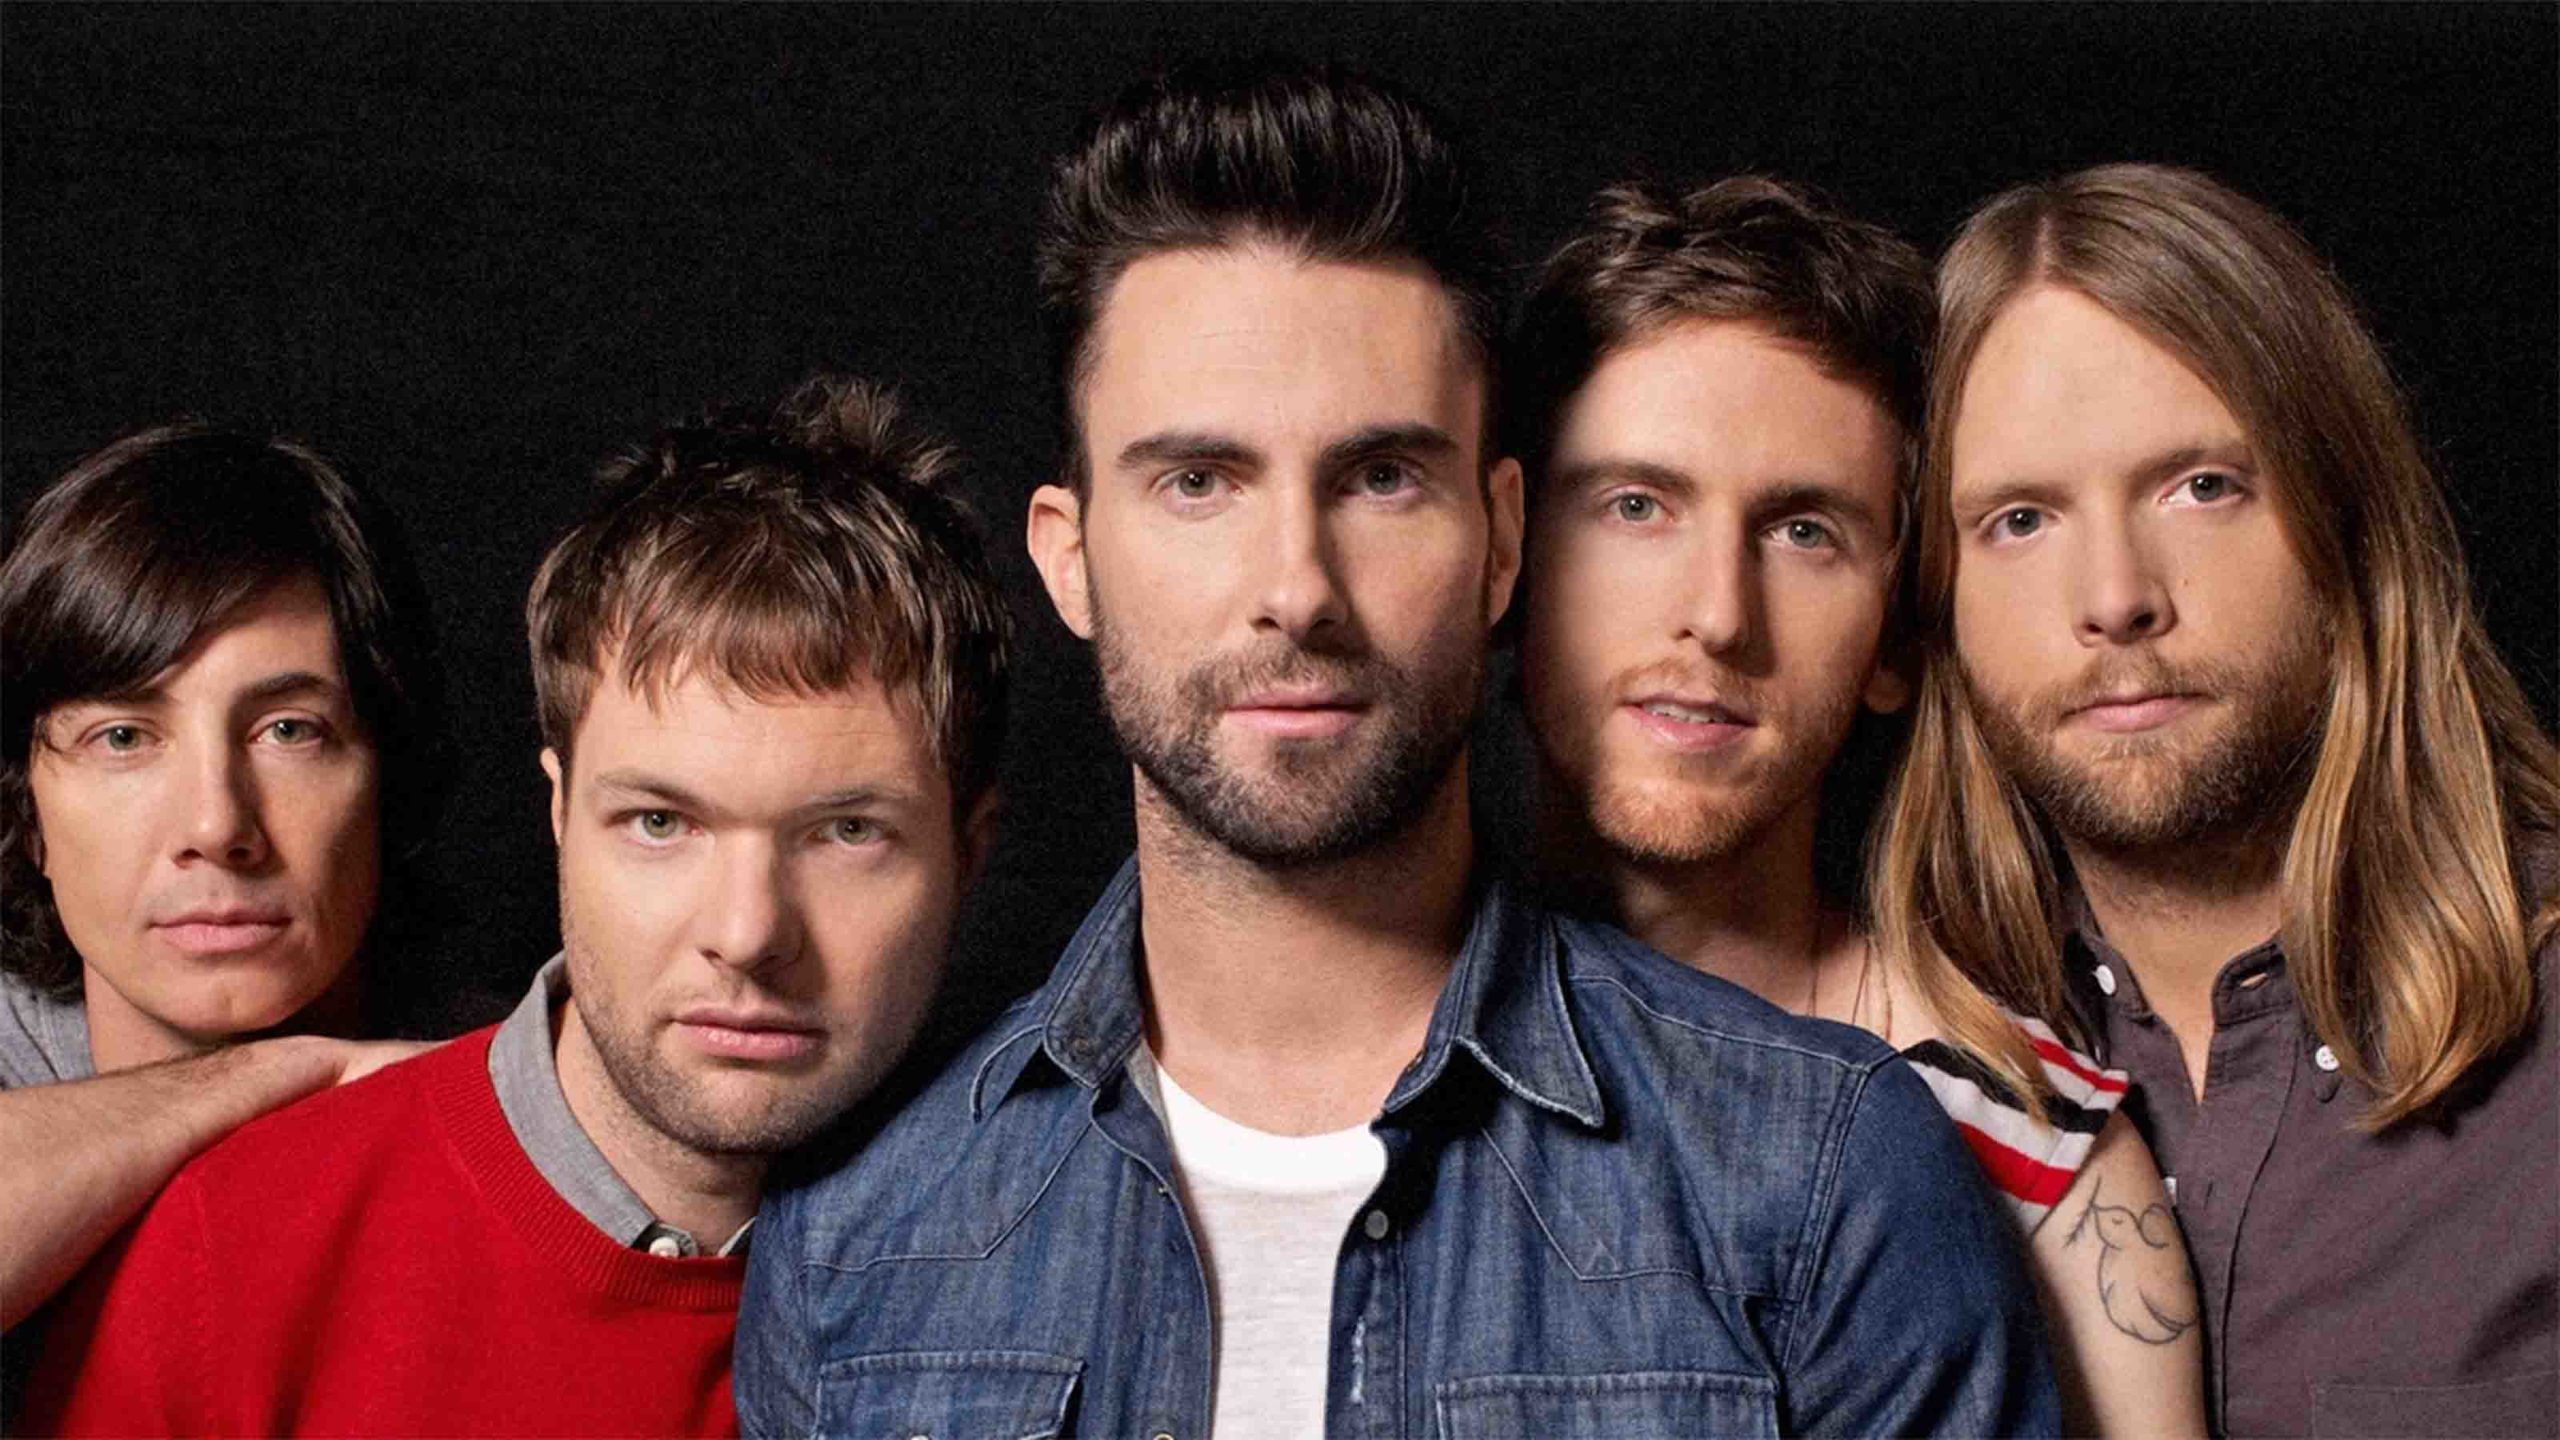 ¡OMG! Habrá concierto de Maroon 5 en México